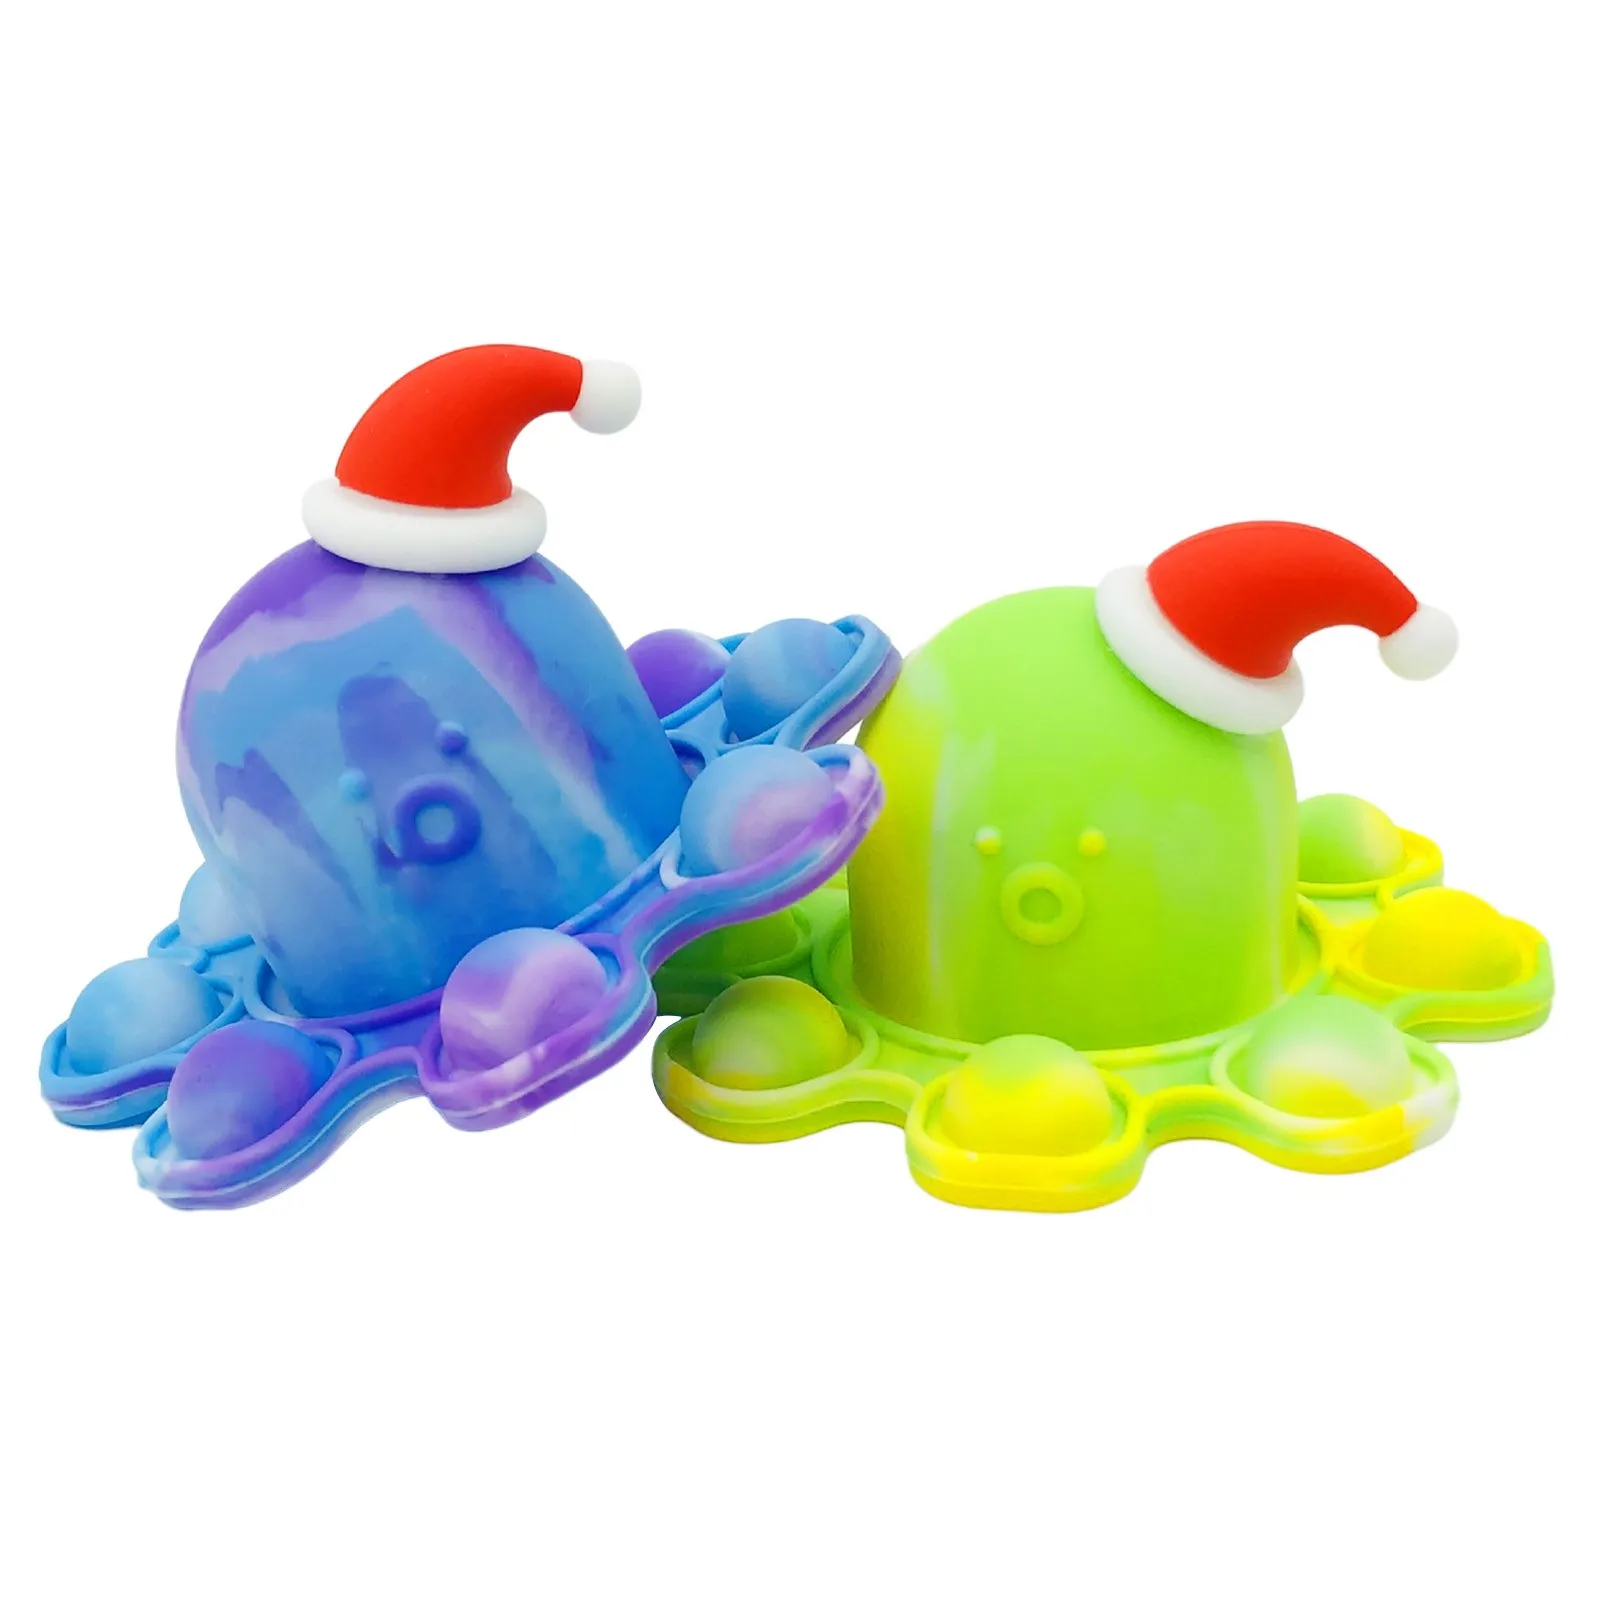 

Подарочные игрушки-антистресс тянущиеся Струны для взрослых и детей сжимаемые антистрессовые сжимаемые игрушки в подарок